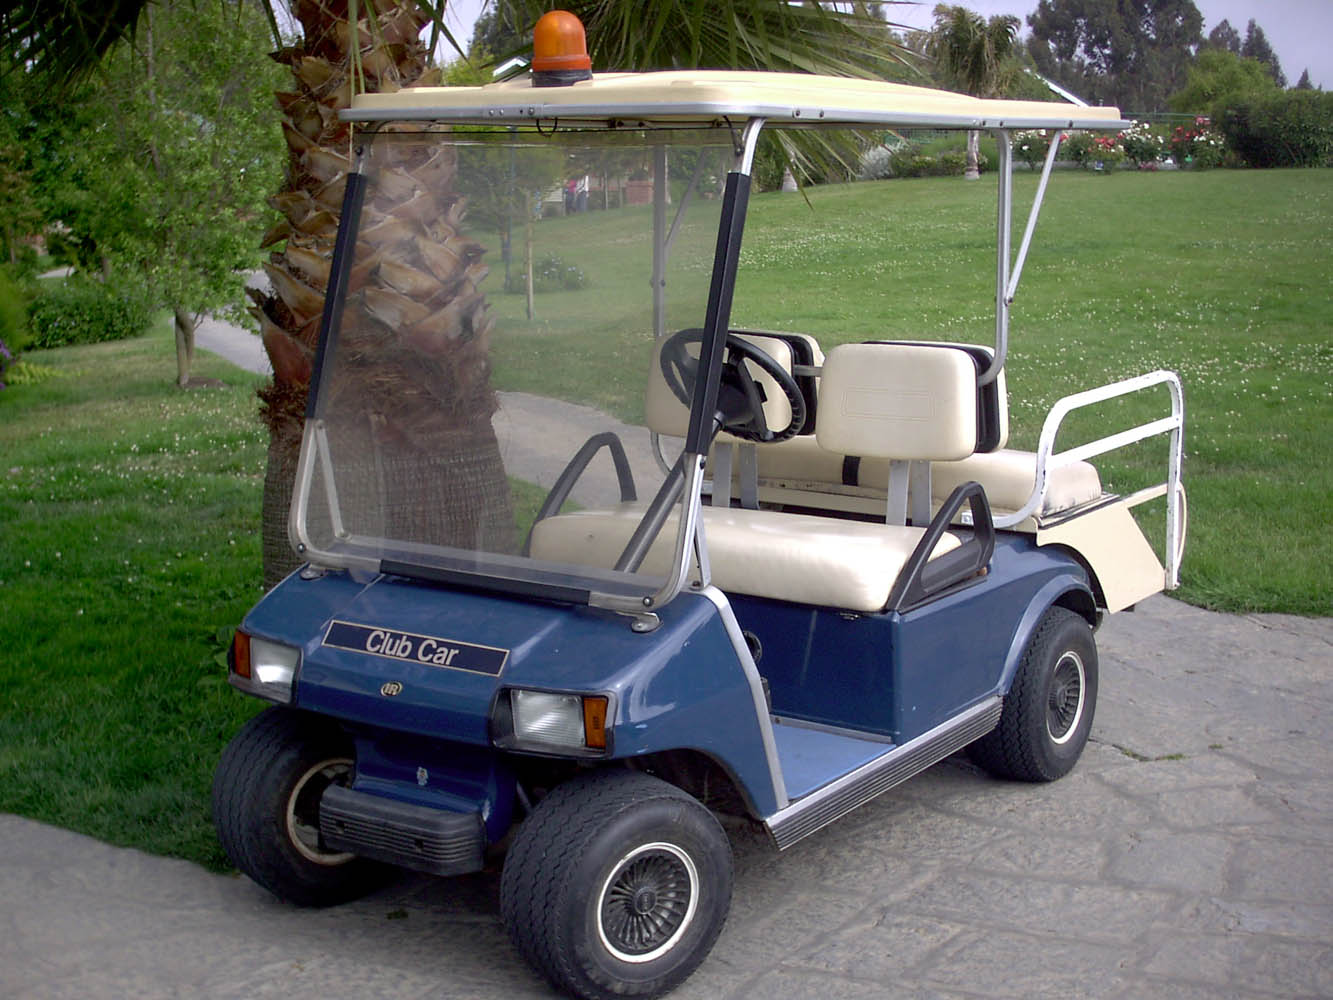 IR Club Car Golf car